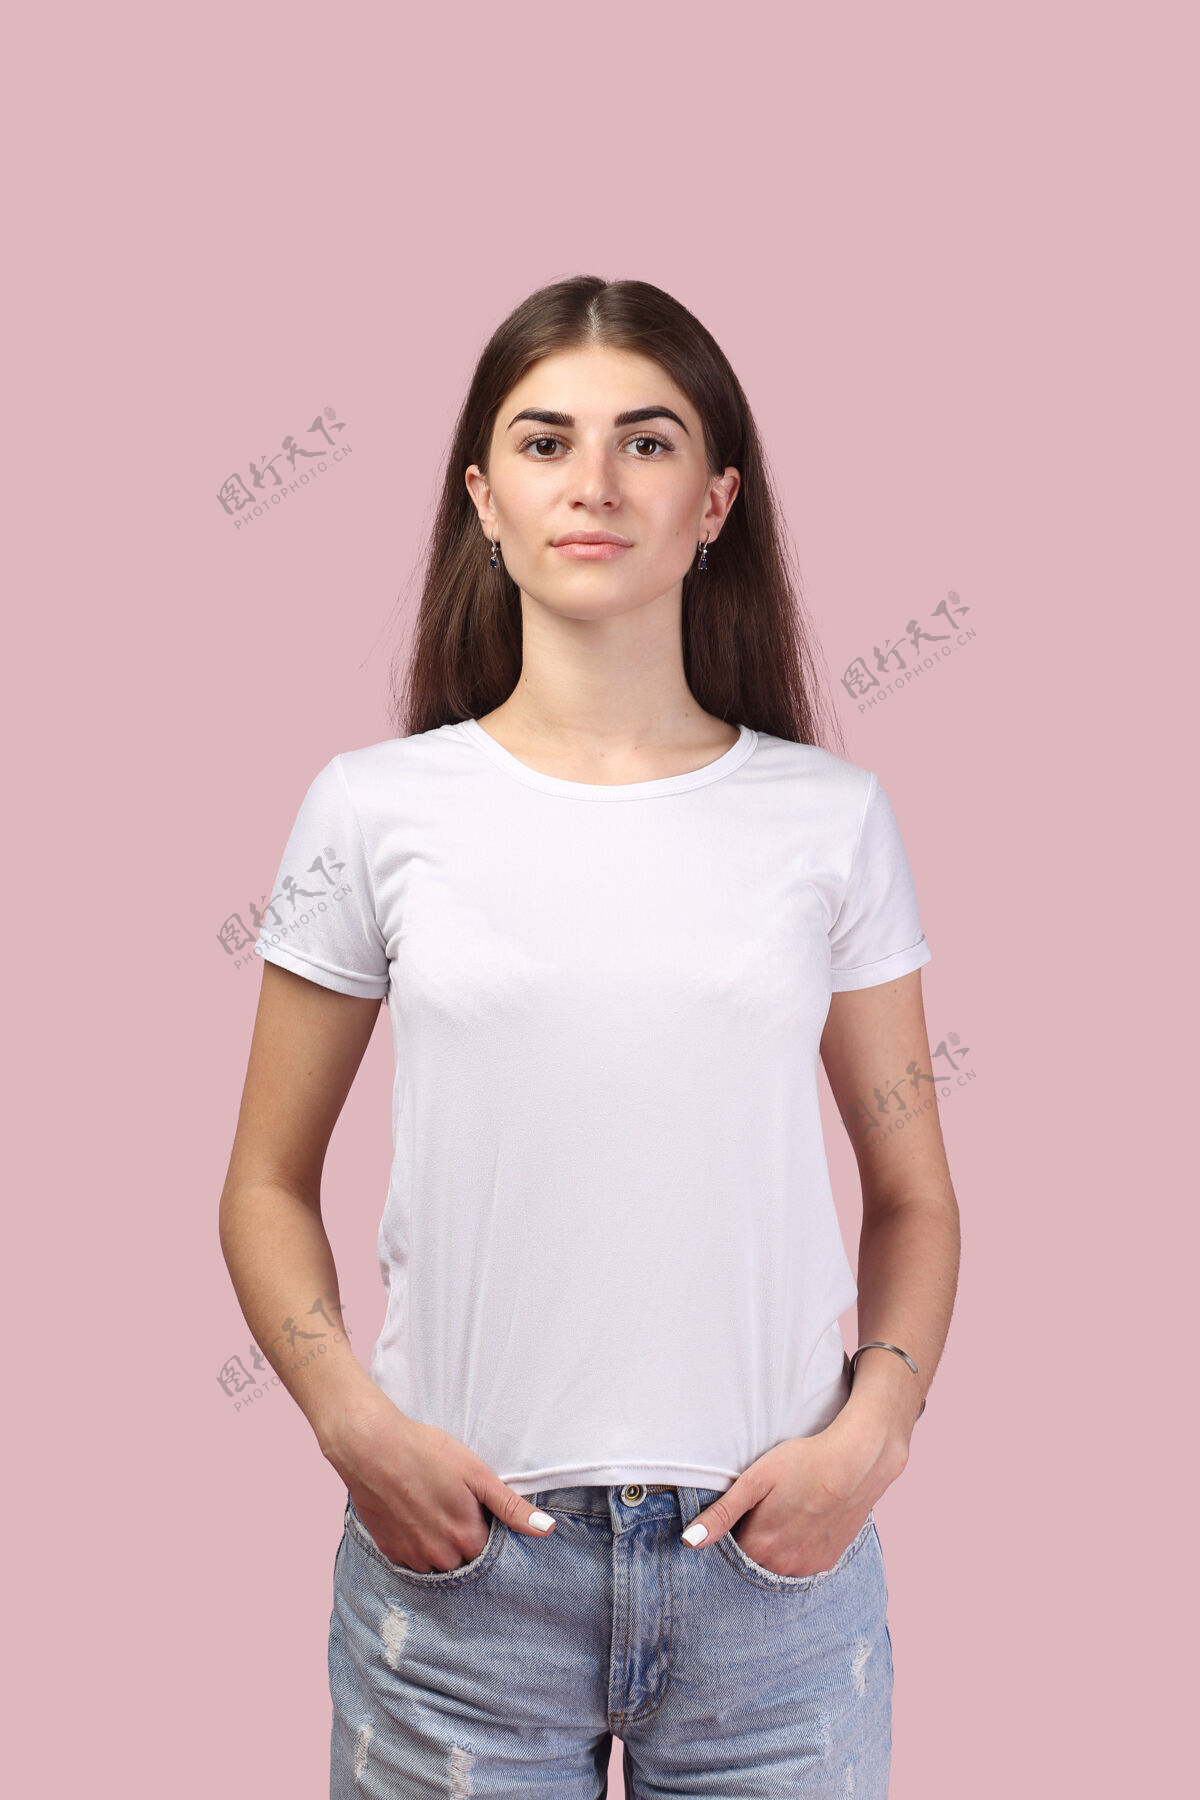 青少年长发的漂亮女孩 穿着白色t恤 摆出淡粉色的姿势背景可爱深色头发 看起来很成功 很专业 对生活有积极的态度现代看起来性感